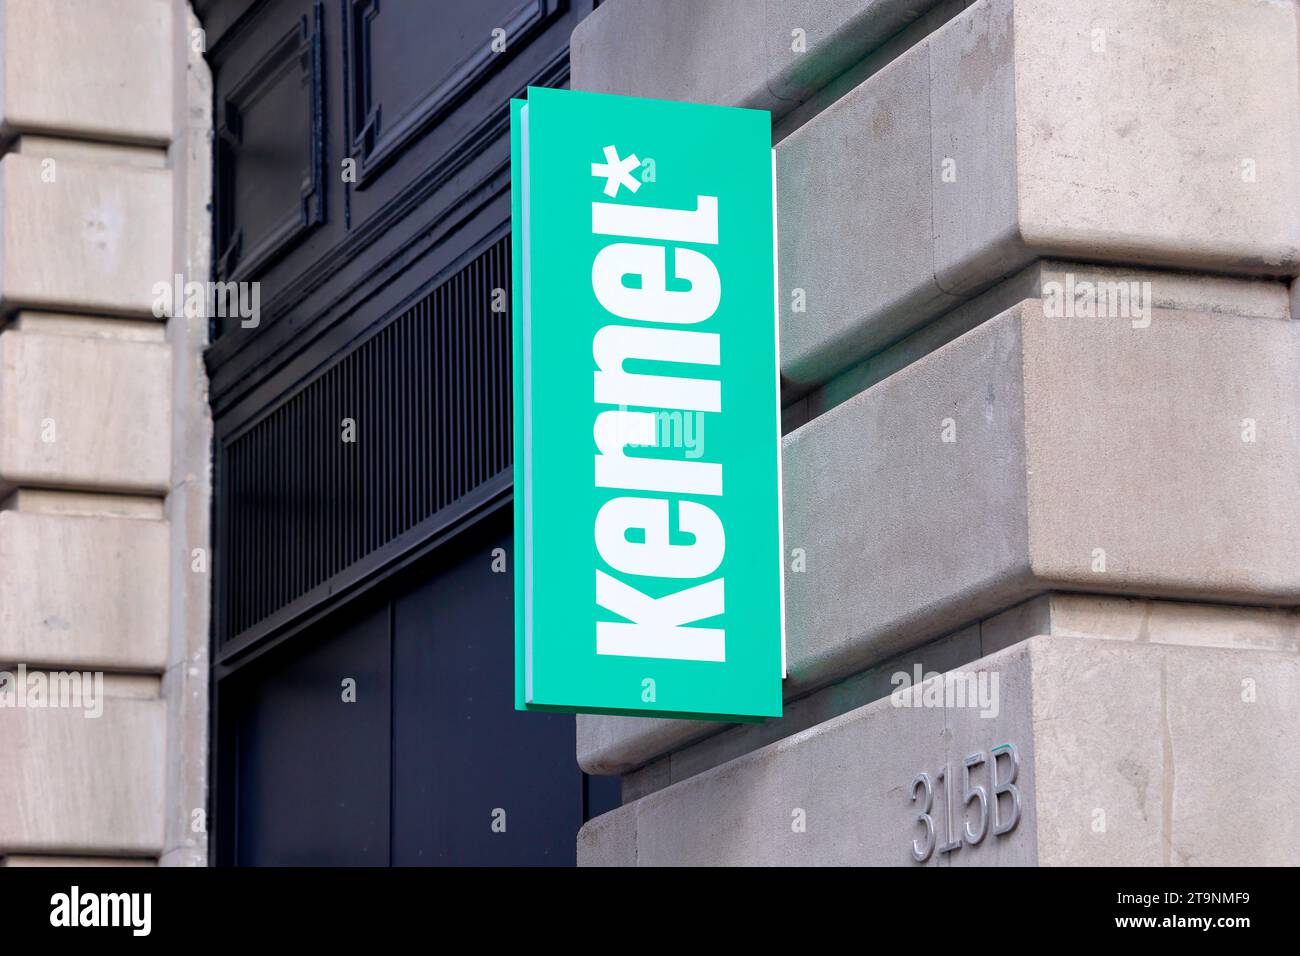 Signalisation pour restaurant végétarien semi-automatisé Kernel fast casual à Manhattan, New York. Le restaurant est par Steve Ells, fondateur et ex-PDG de Chipotle. Banque D'Images